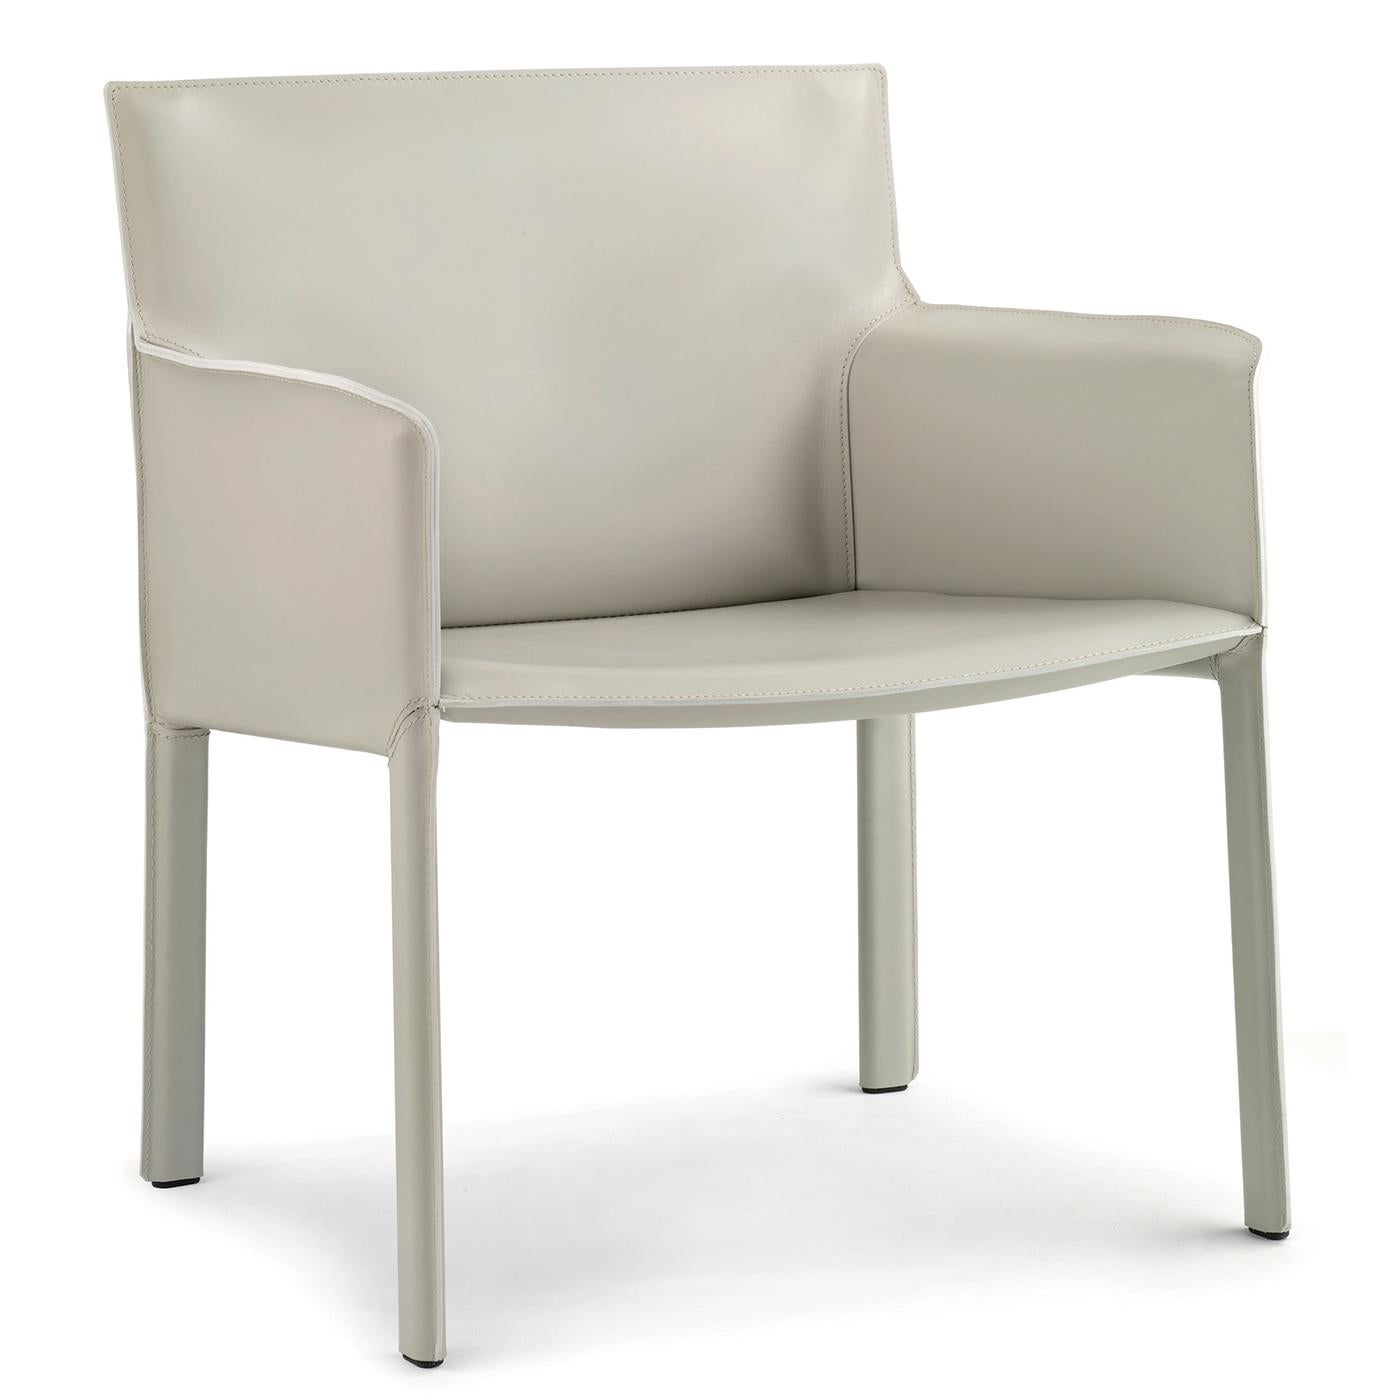 Le confortable fauteuil relax est recouvert de cuir gris soie sur une structure en acier tubulaire. D'autres couleurs et finitions sont disponibles, garantissant qu'elle s'intègre parfaitement à n'importe quel environnement. Un couvercle d'assise en